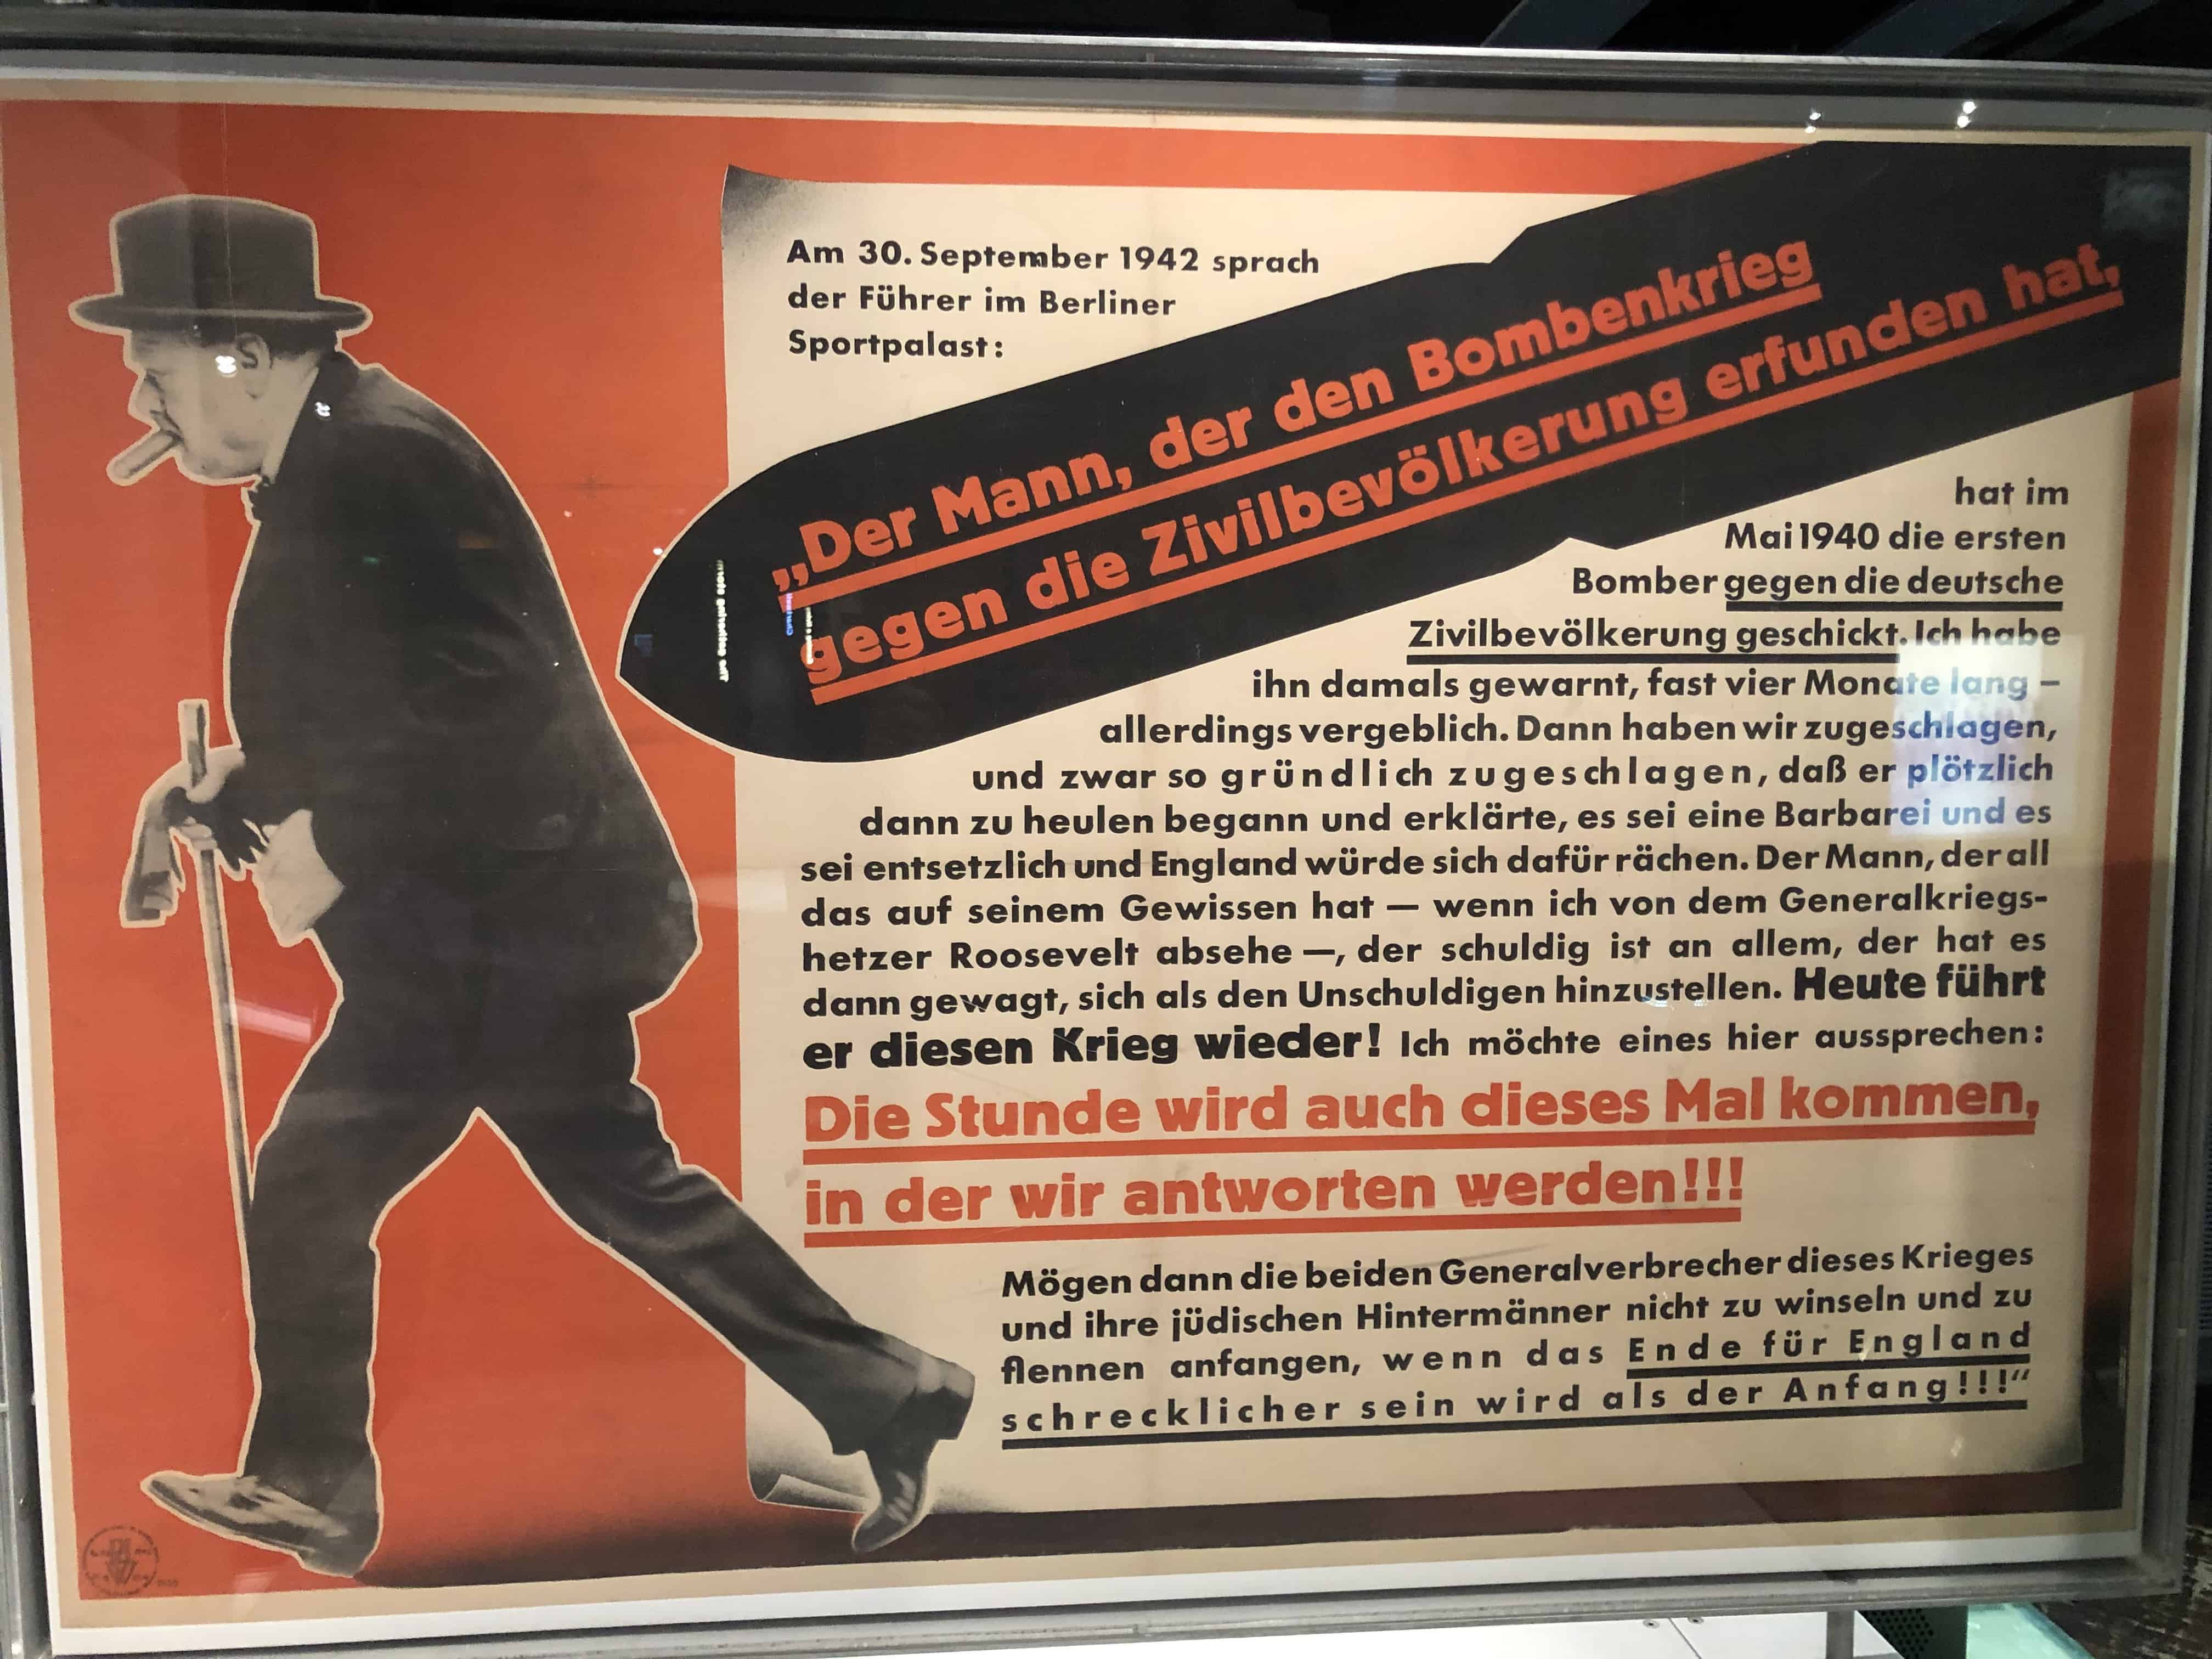 Nazi propaganda poster in the Churchill Museum